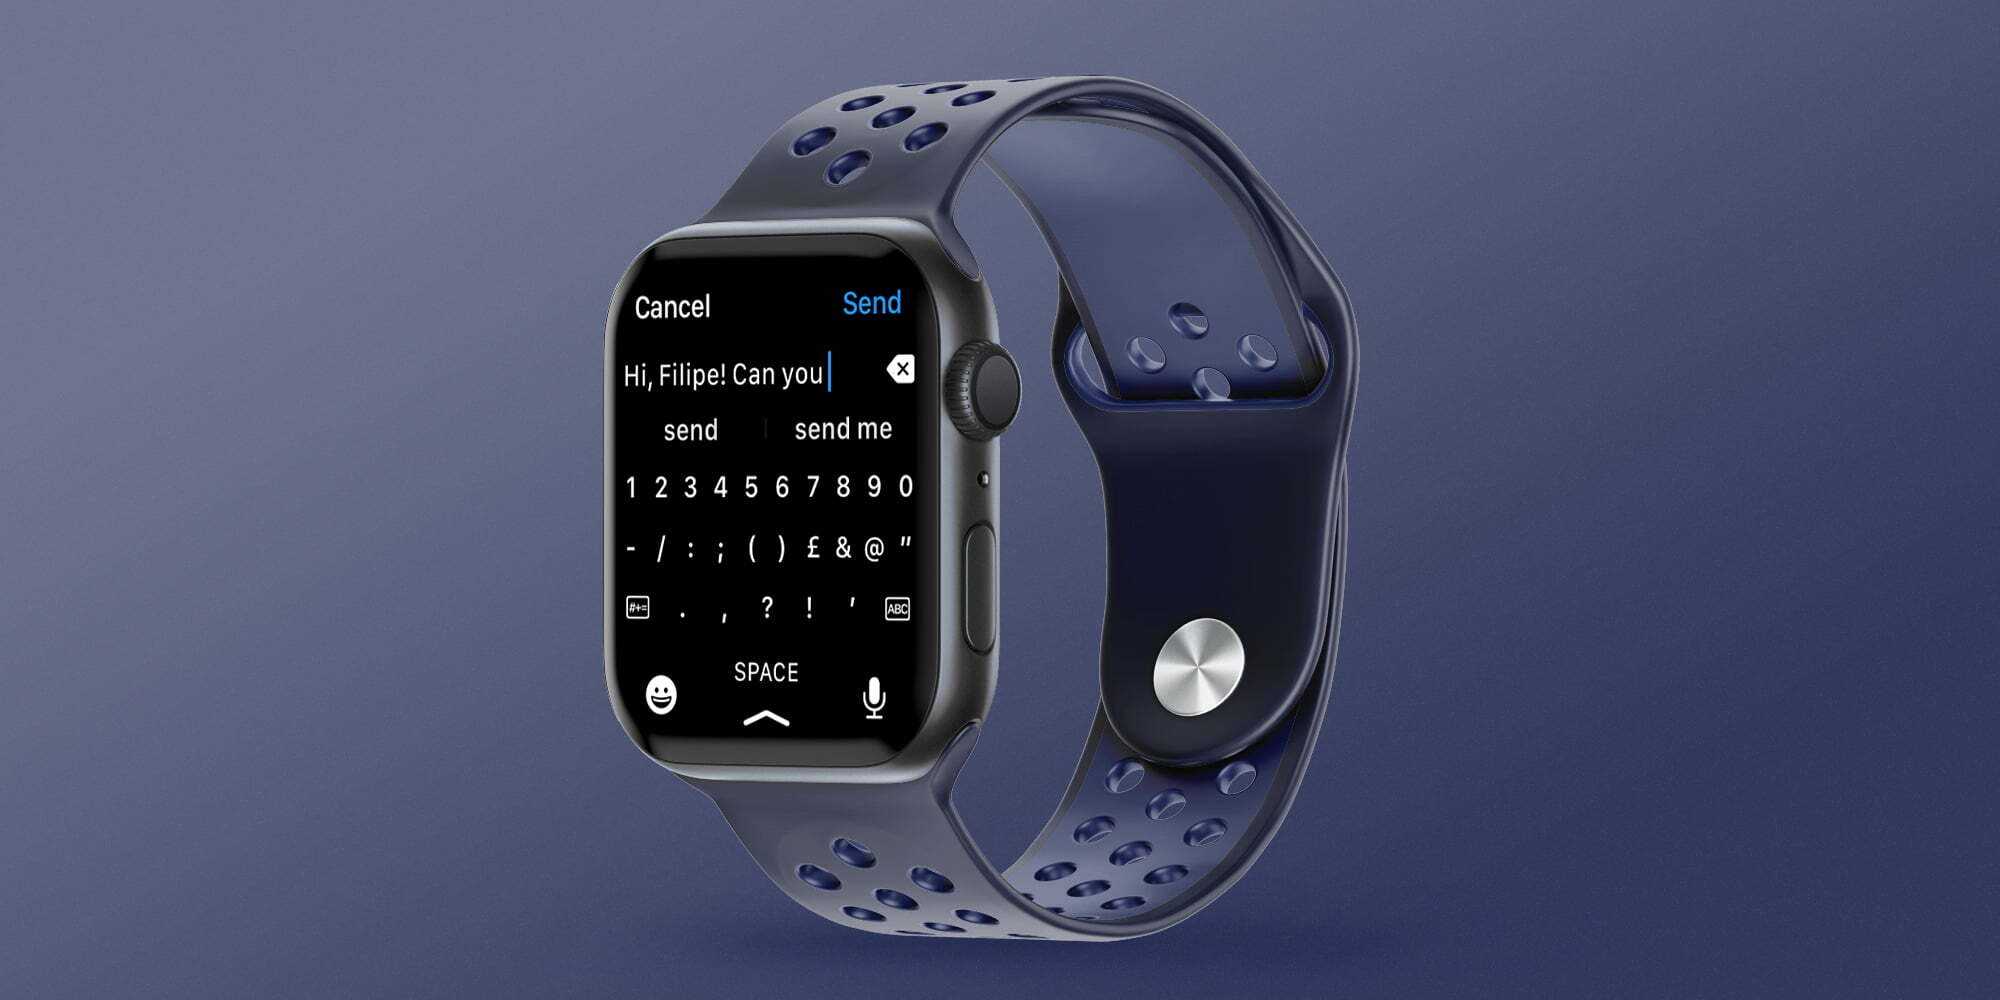 Совсем недавно Apple показали нам новую версию умных часов - Apple Watch Series 7 В статье предлагаю поговорить о разнице между новой и предыдущими версиями часов от Apple и обсудить новые фишки устройства